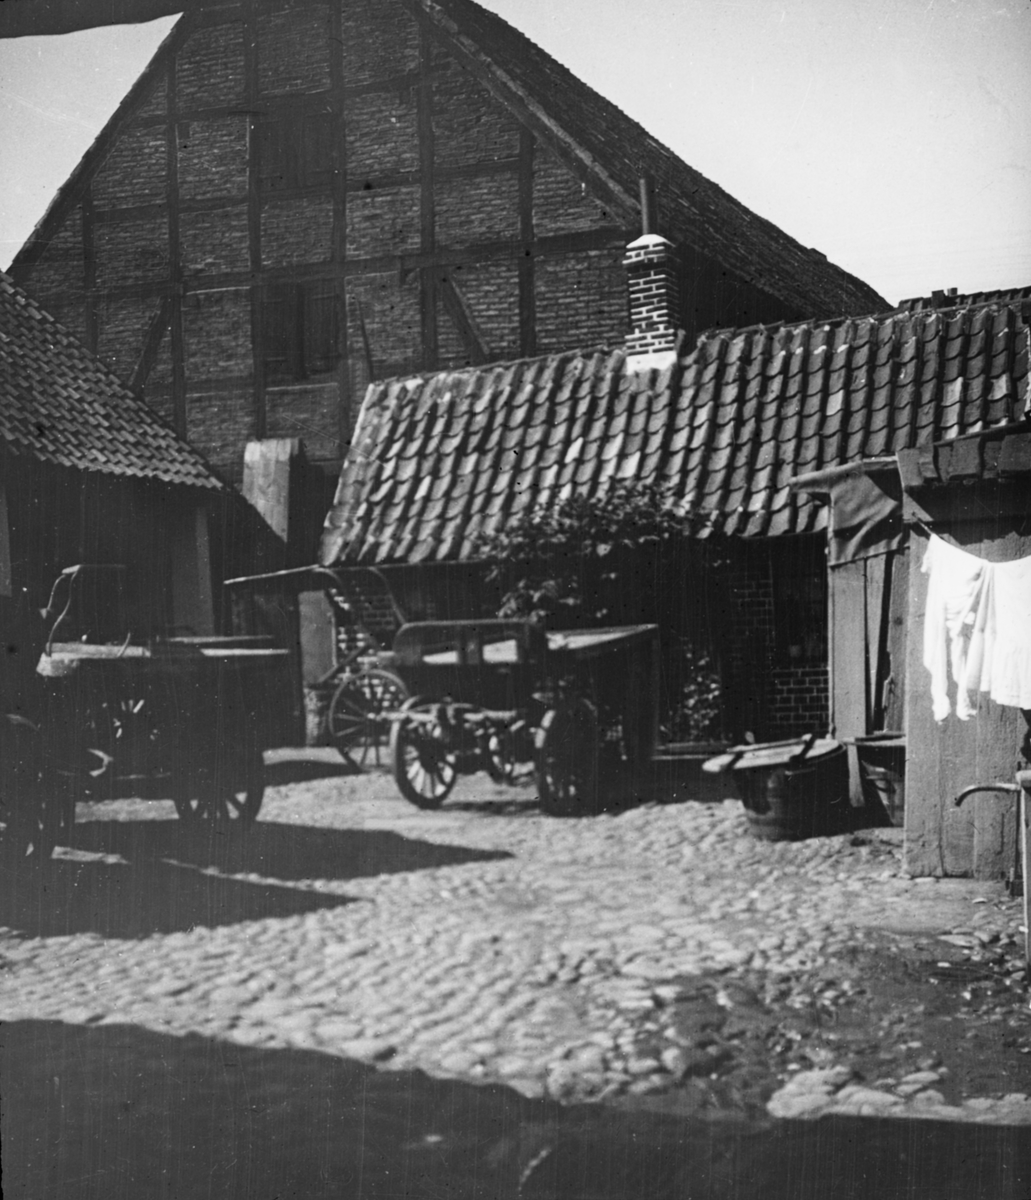 Skioptikonbild med motiv från Helsingborg. Kullerstensbeklädd bakgård med droskor och vagnar.
Bilden har förvarats i kartong märkt: Helsingborg 8. 1908